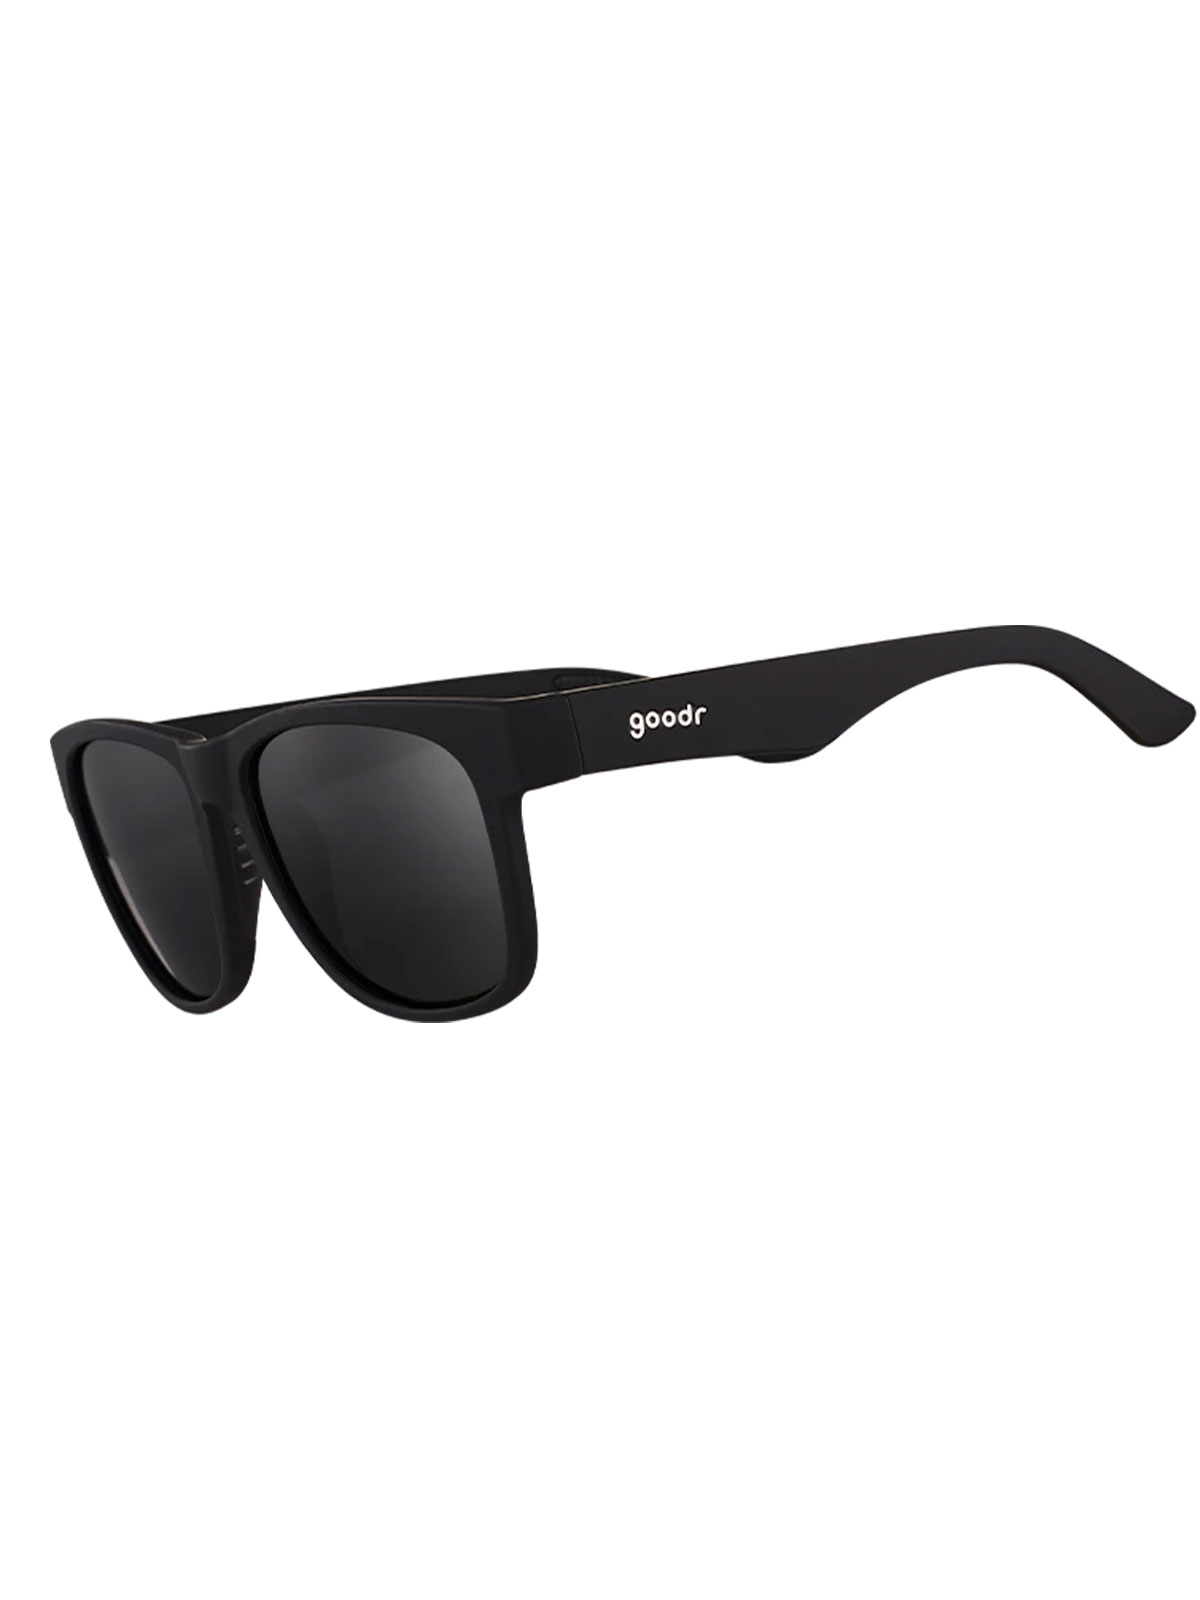 The BFG - Hooked on Onyx solbriller